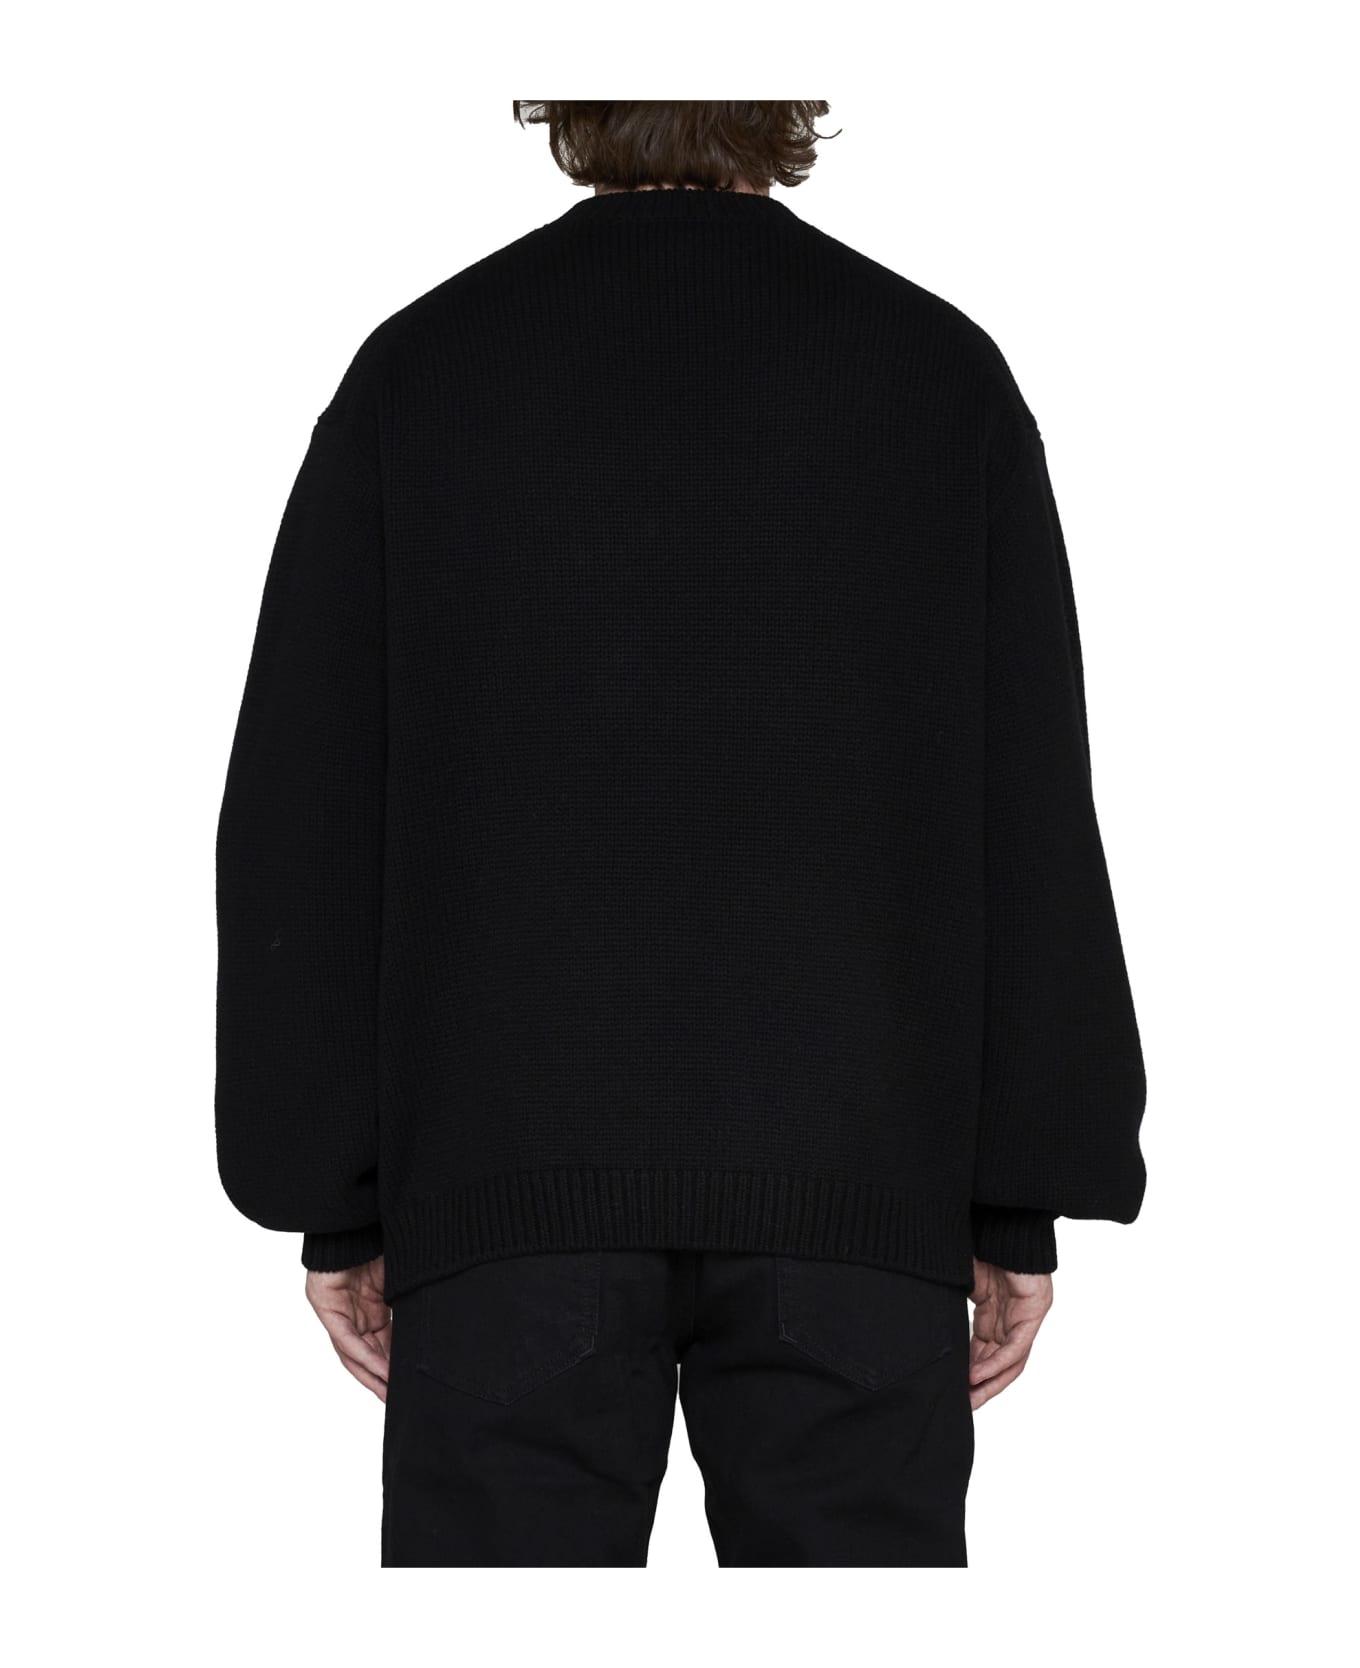 Kenzo Crew-neck Sweater - J Black